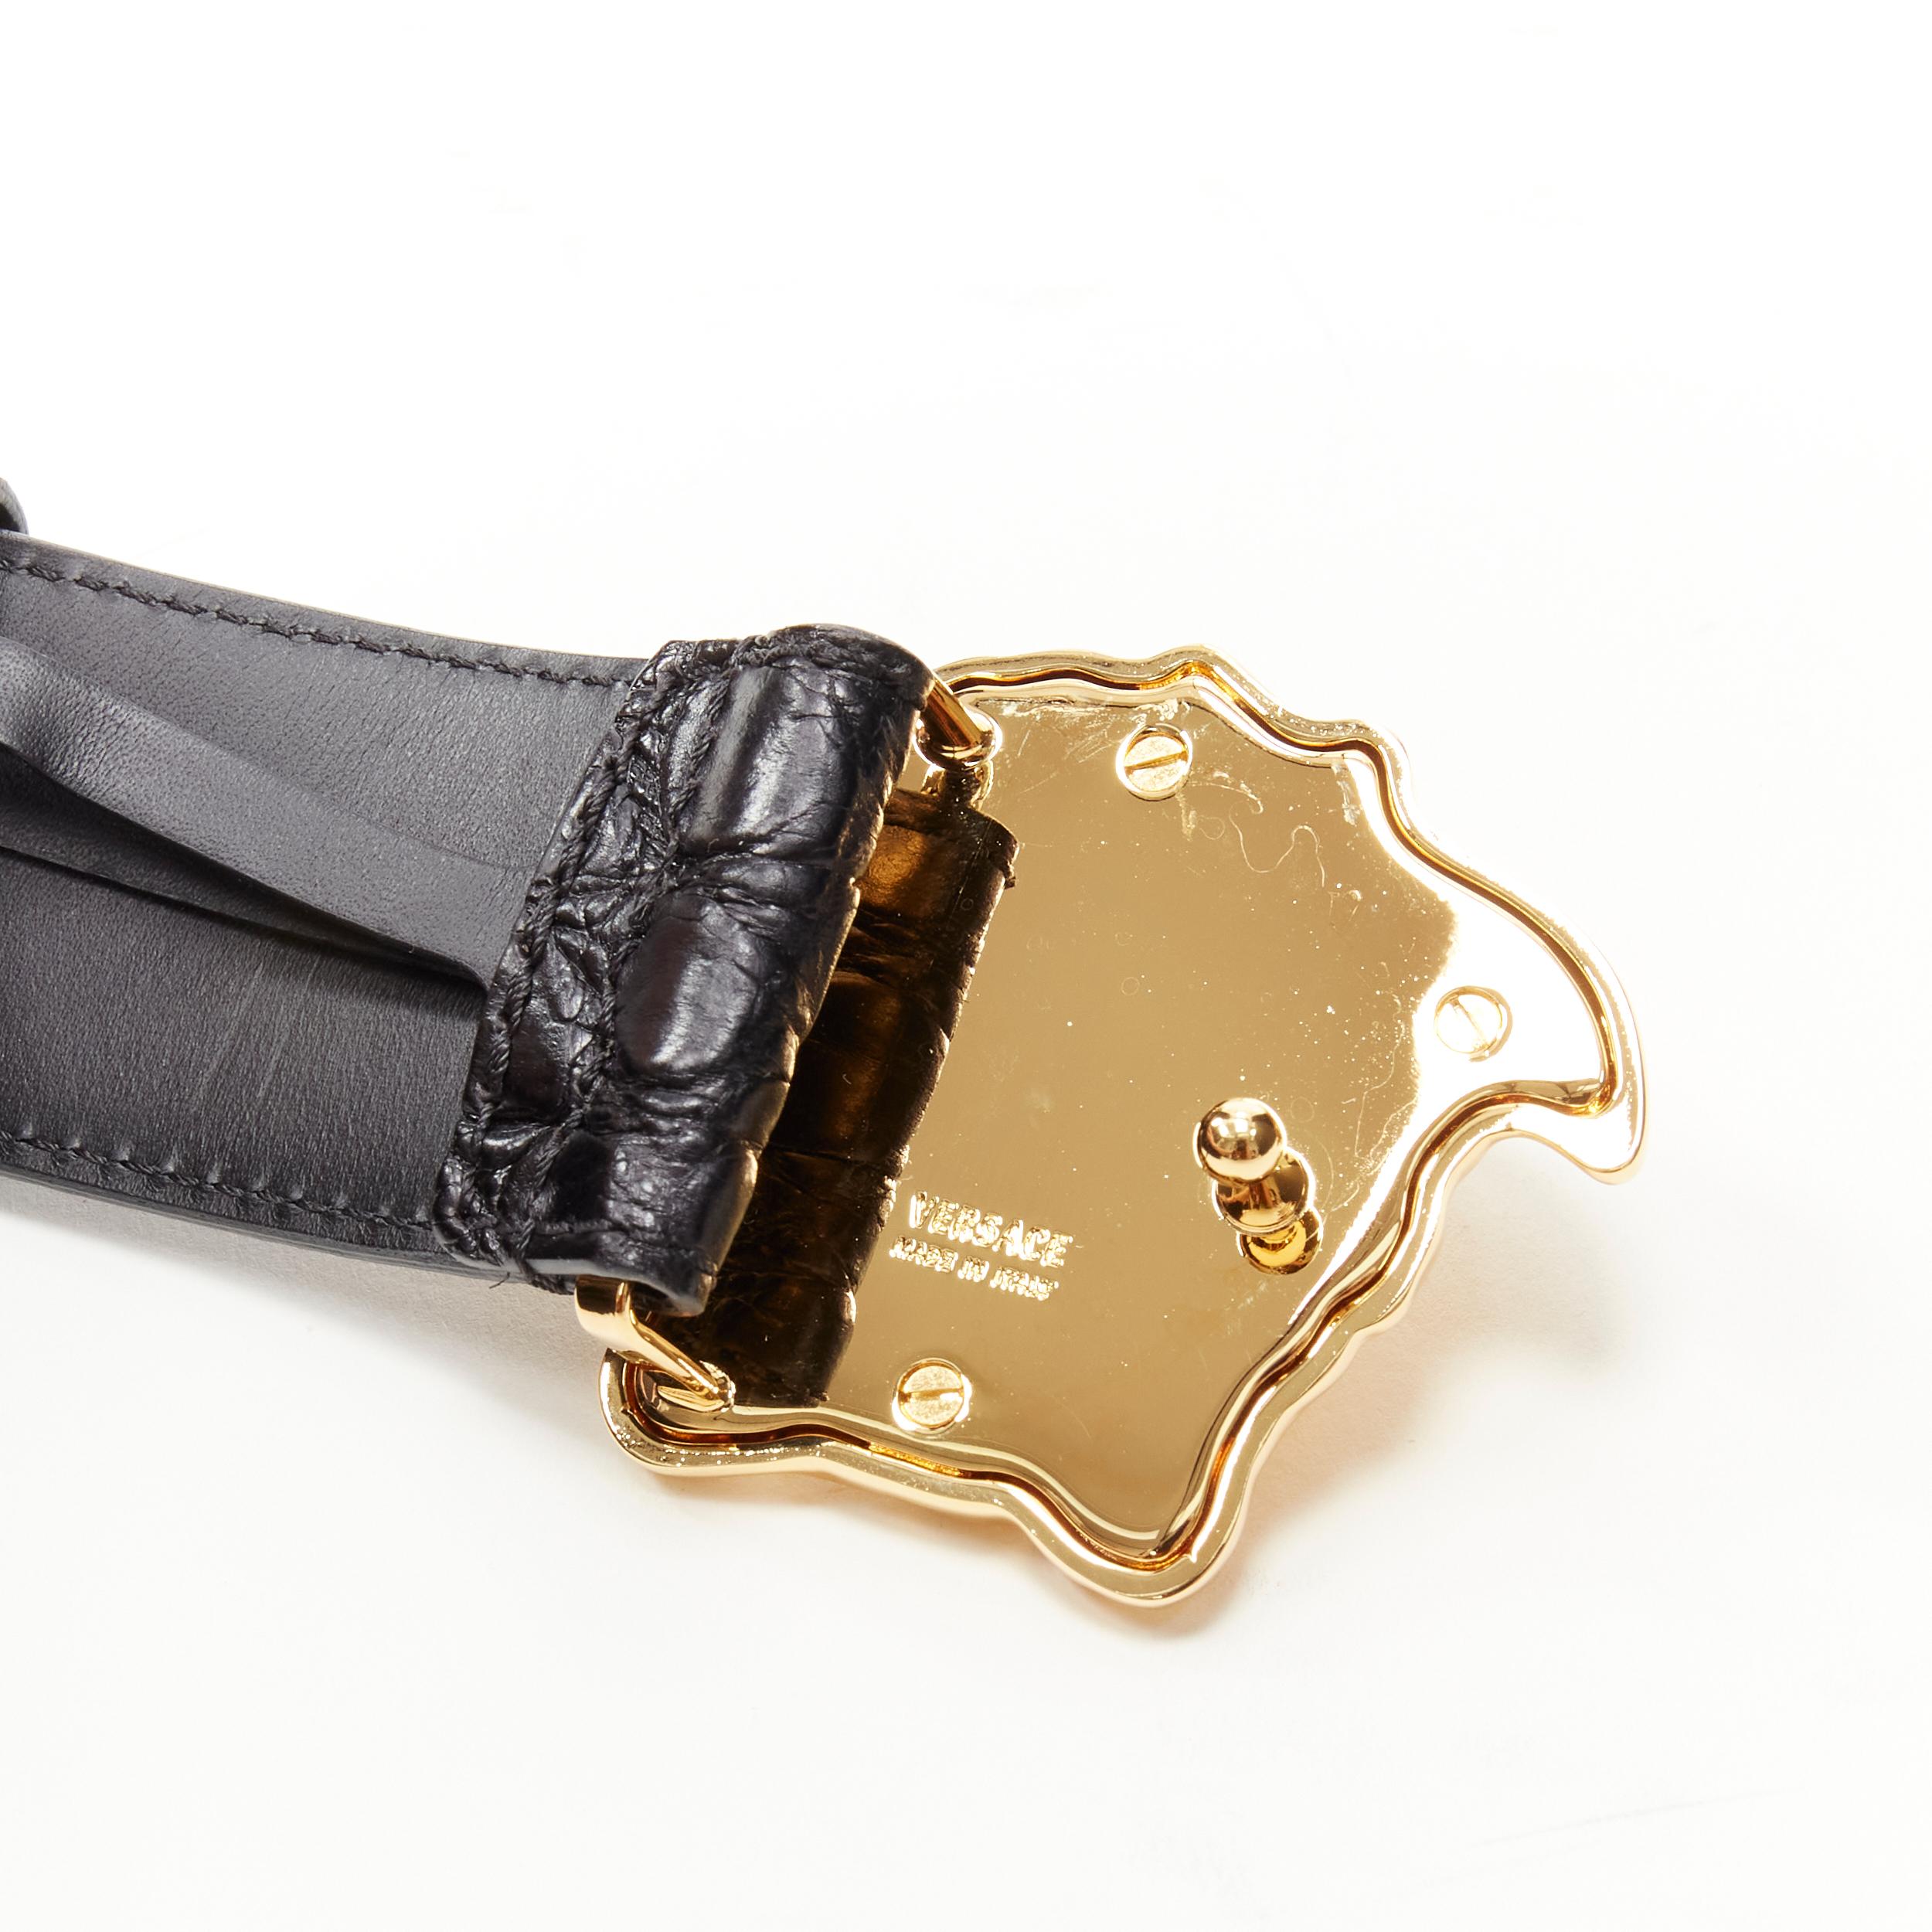 Men's new VERSACE $1200 La Medusa gold buckle black croc leather belt 95cm 36-40